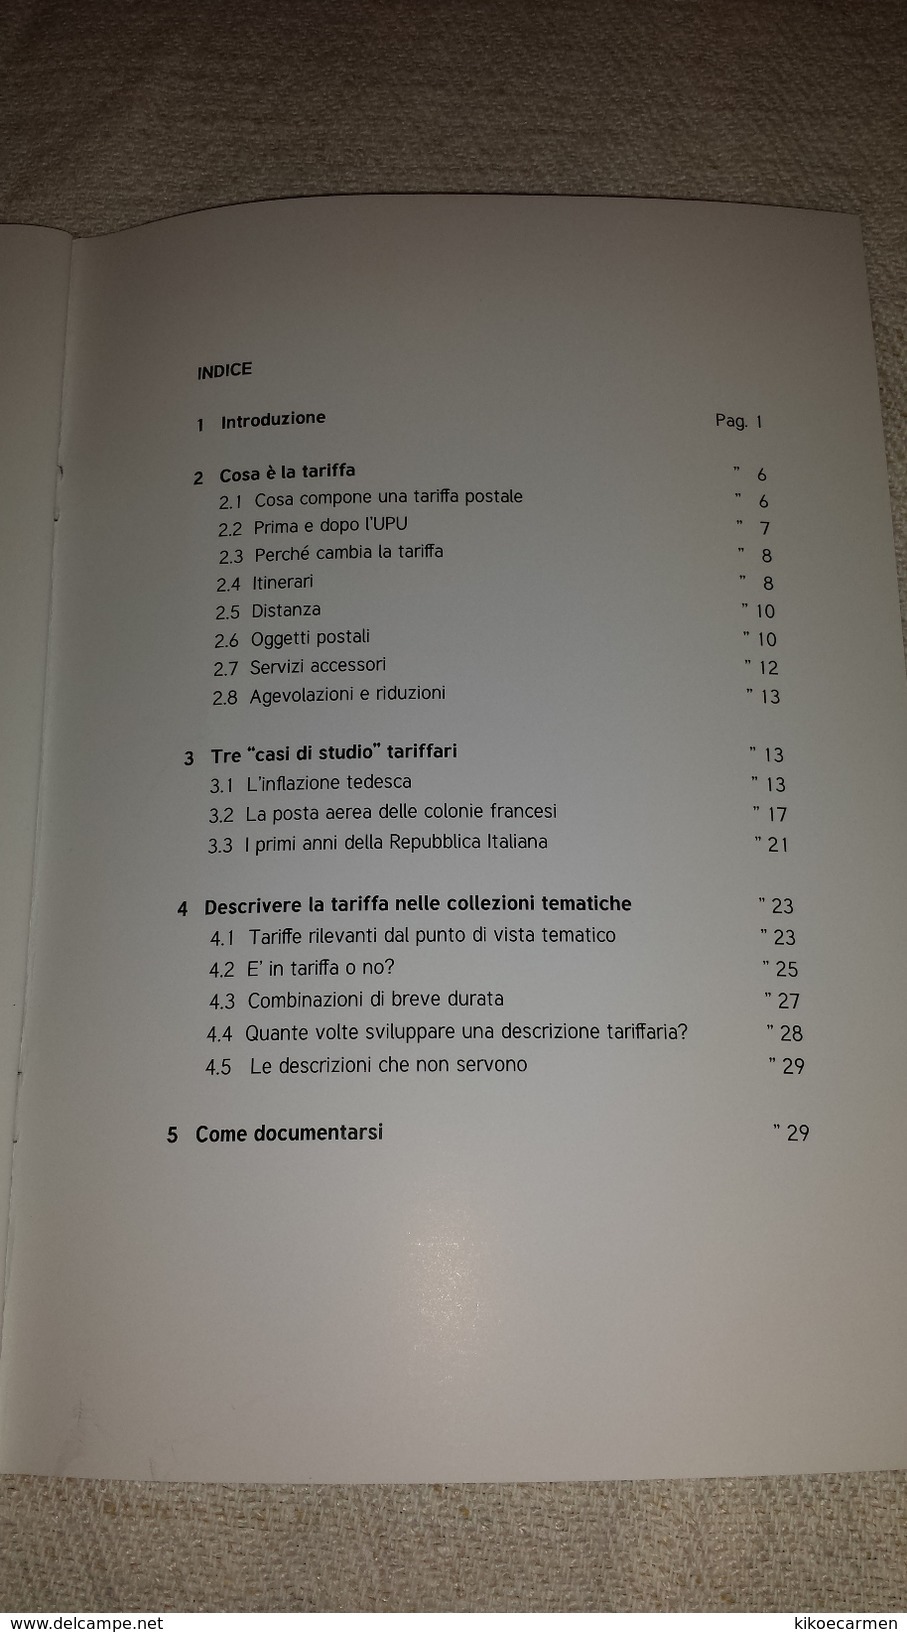 TARIFFE POSTALI IN FILATELIA TEMATICA Guglielminetti Quaderni CIFT, Book 36 Pages In 19 Black/white Photocopies Thematic - Motive